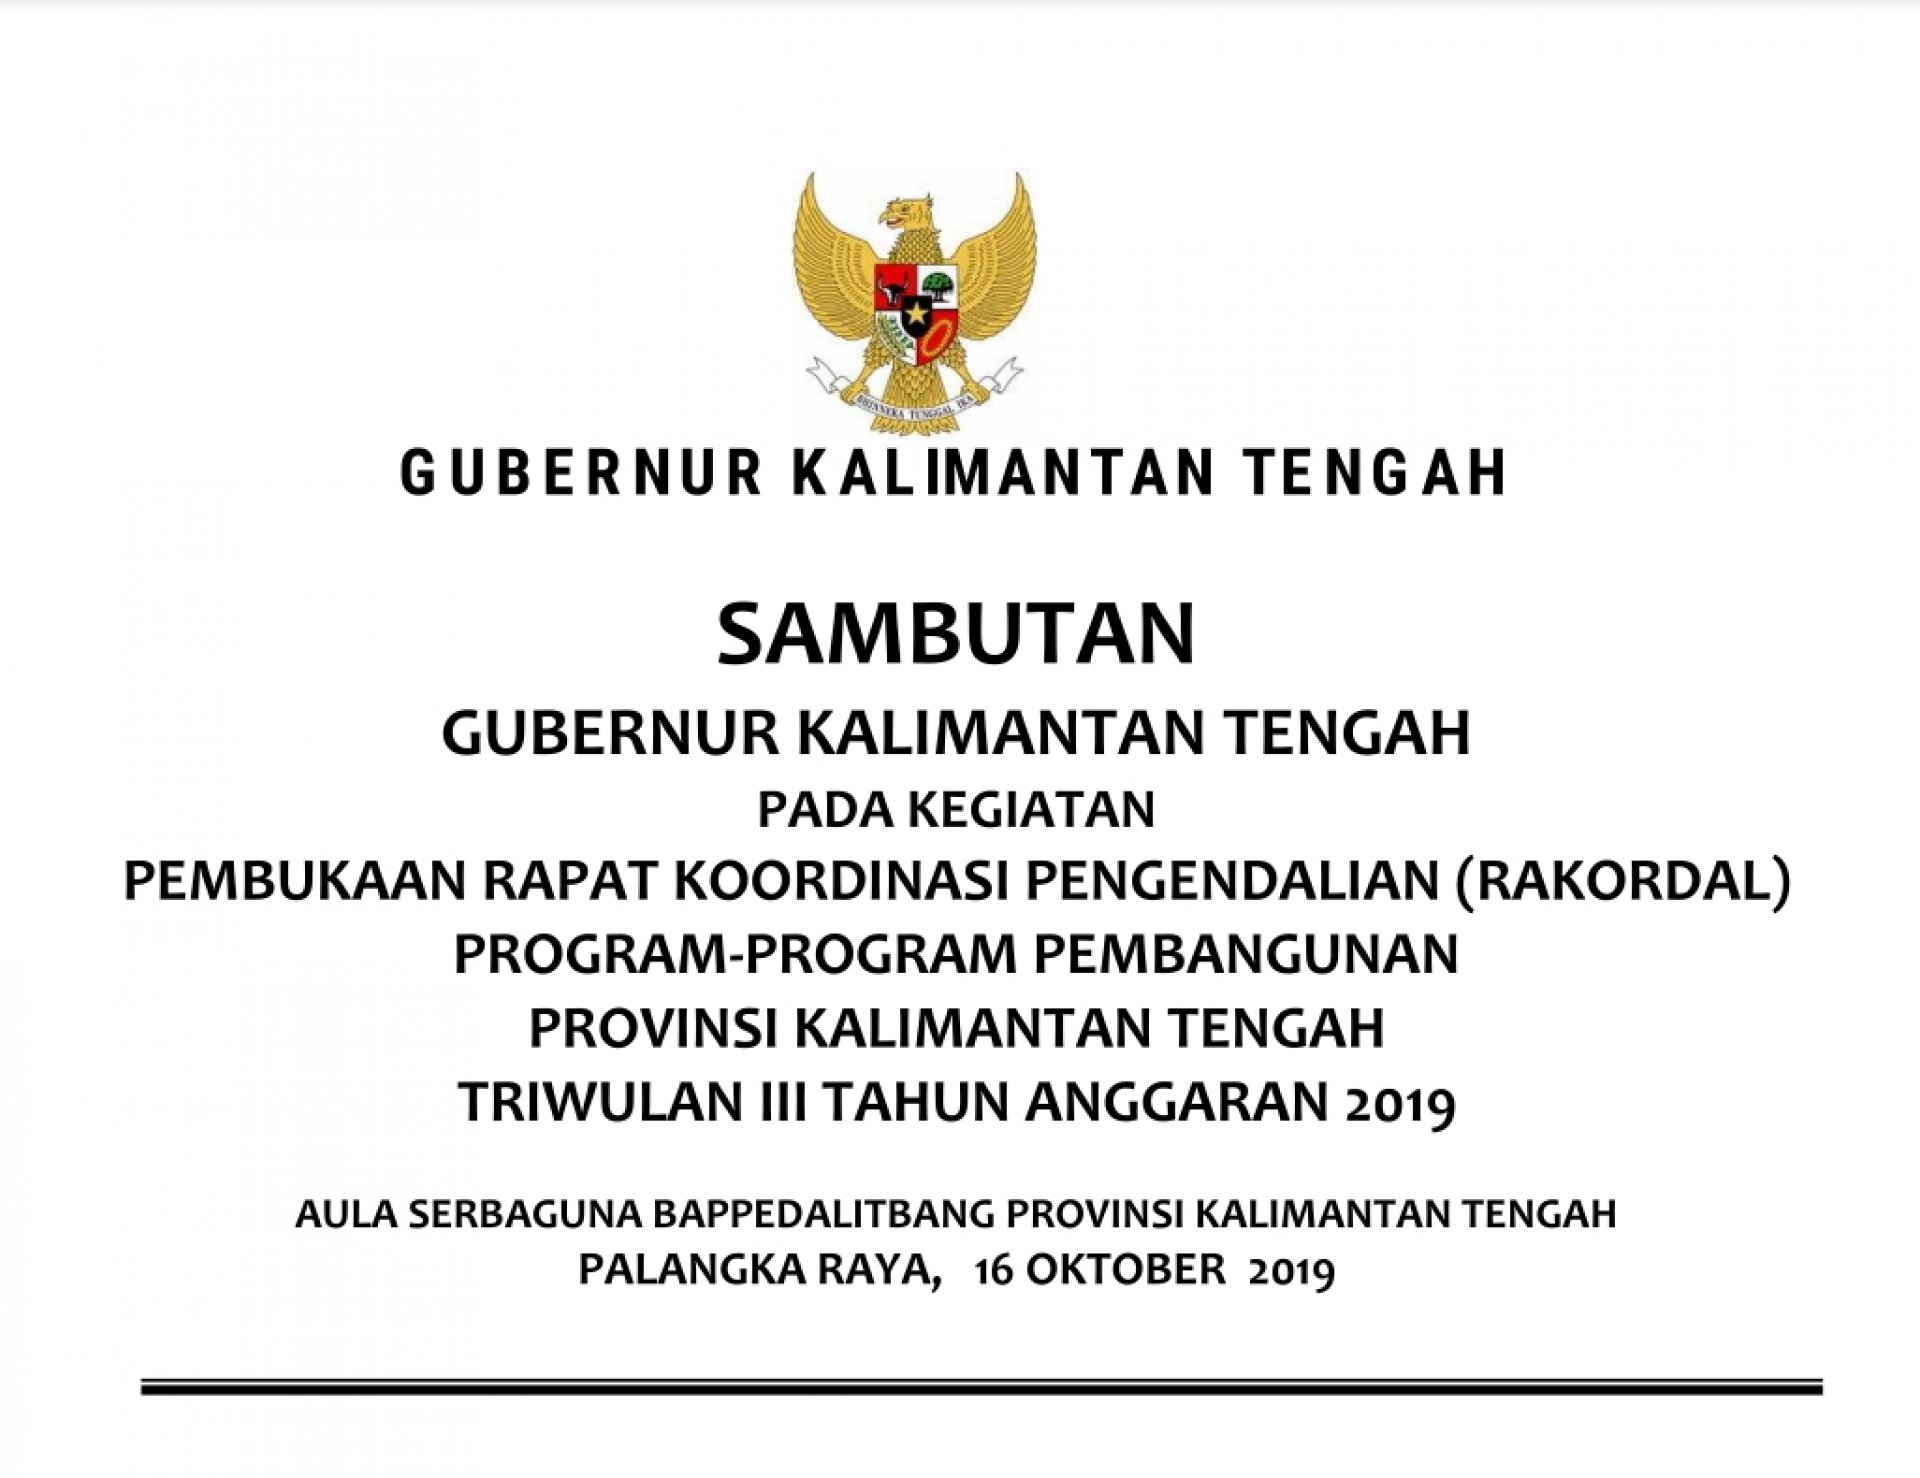 Sambutan Gubernur Kalimantan Tengah pada acara Rakordal Triwulan III Tahun 2019